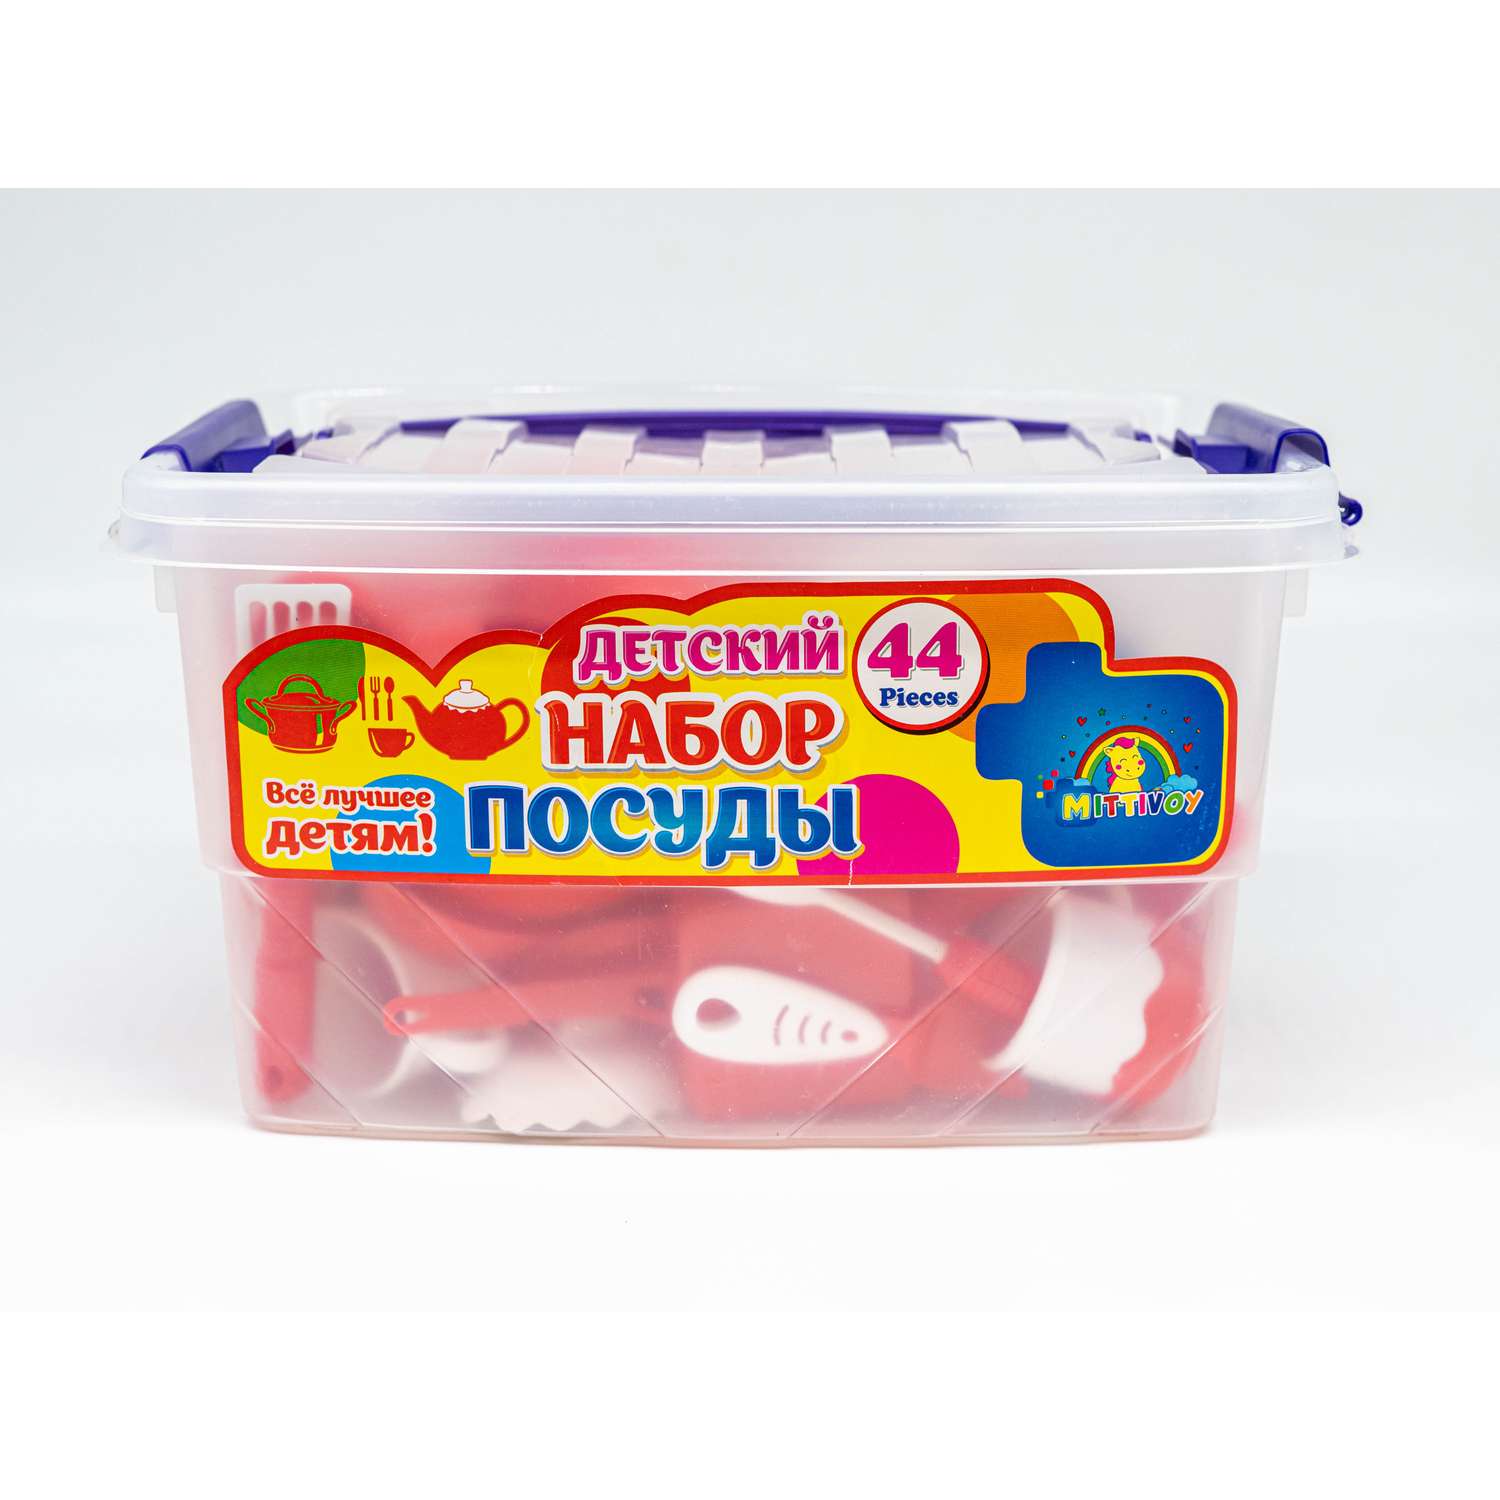 Набор игрушечной посуды TOY MIX Детский развивающий в пластиковом контейнере KMP 200 - фото 9